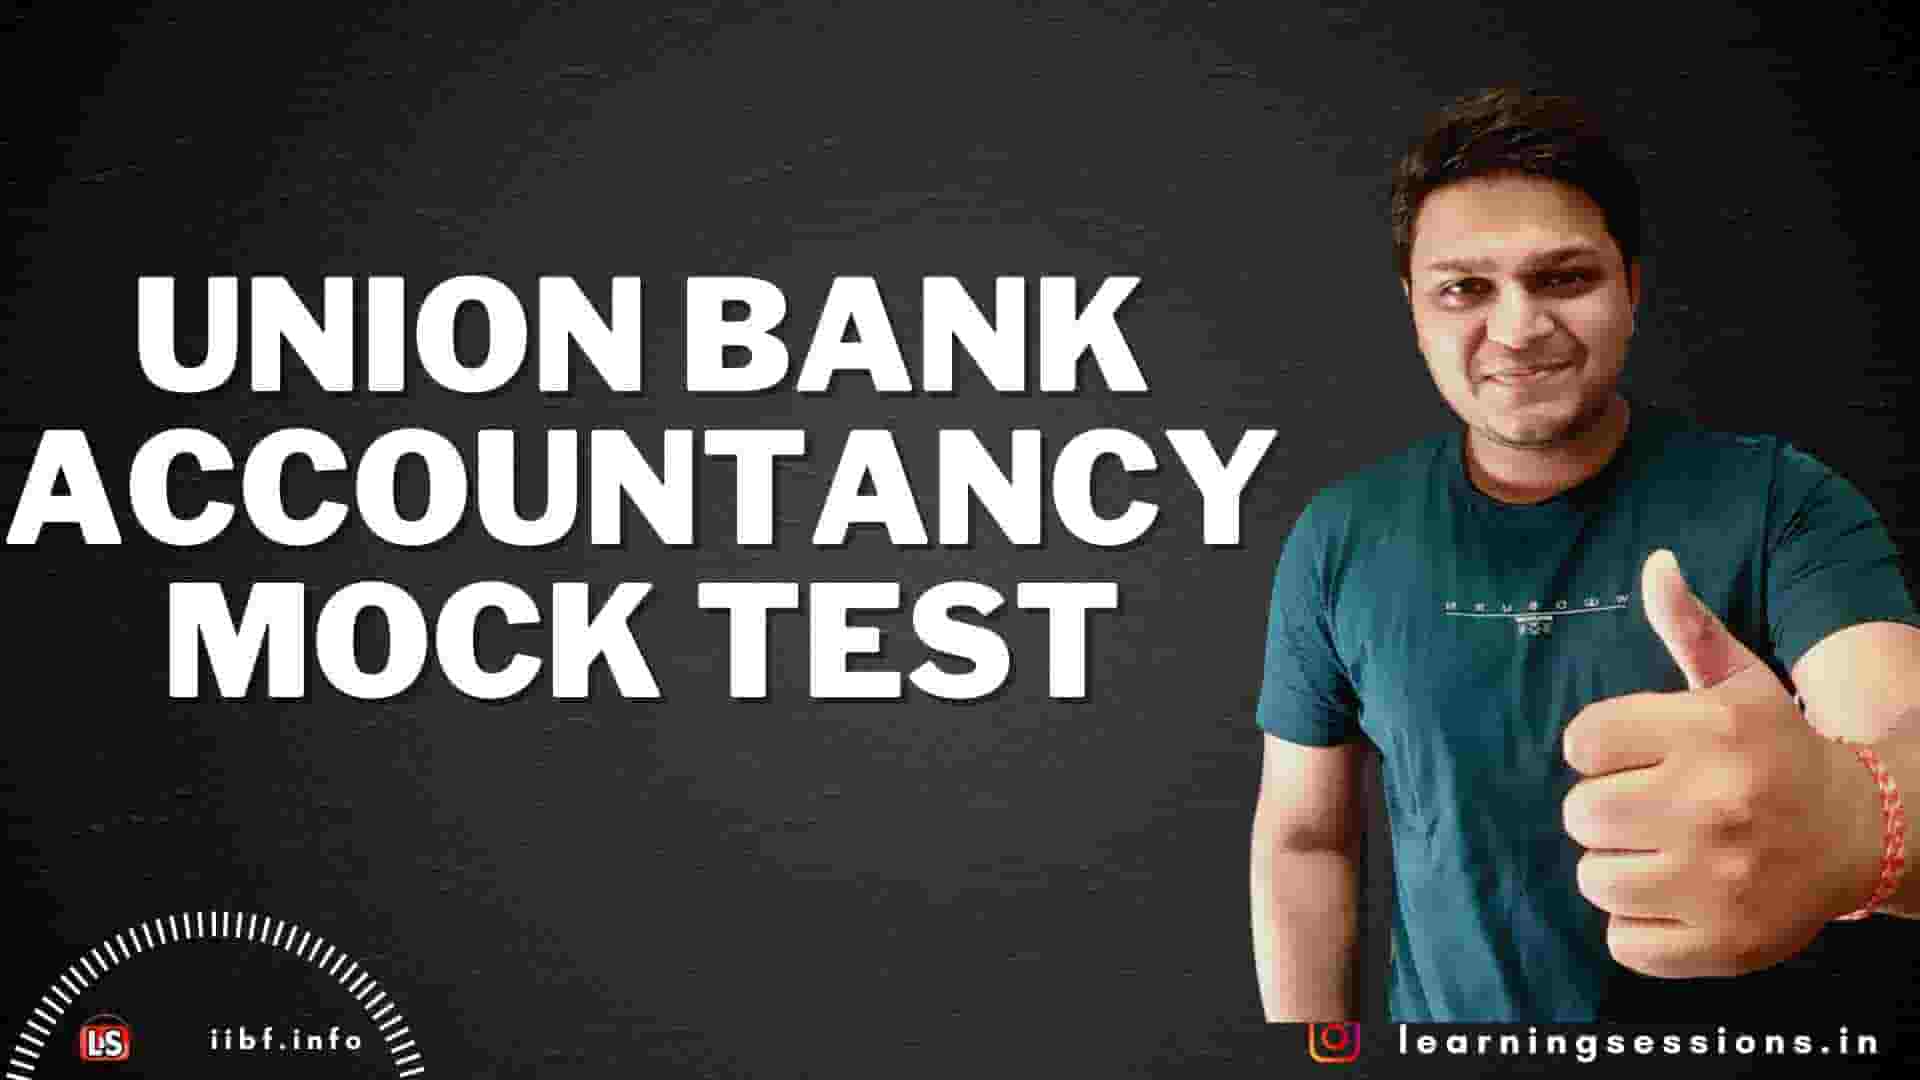 Union Bank Accountancy MOCK TEST